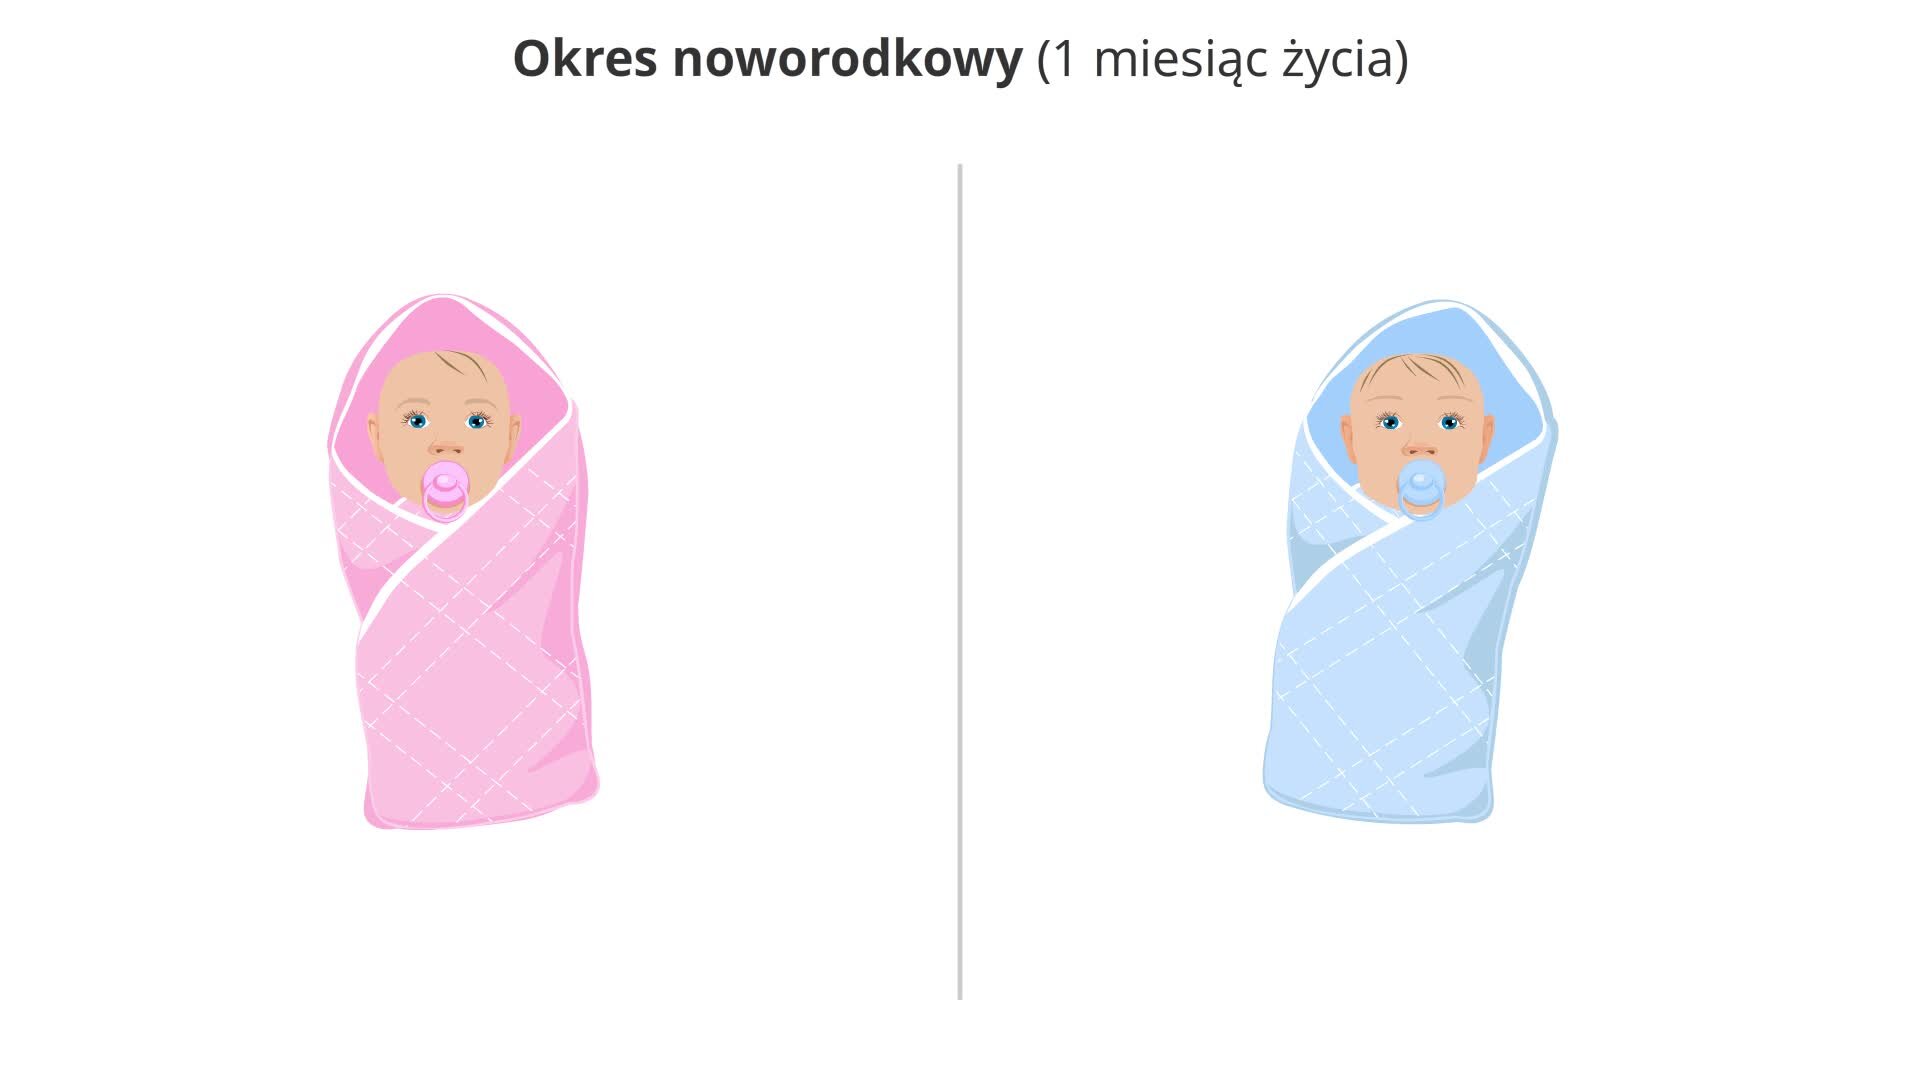 Ilustracja prezentuje noworodka żeńskiego w różowym beciku i ze smoczkiem w buzi oraz noworodka męskiego w niebieskim beciku i również ze smoczkiem.